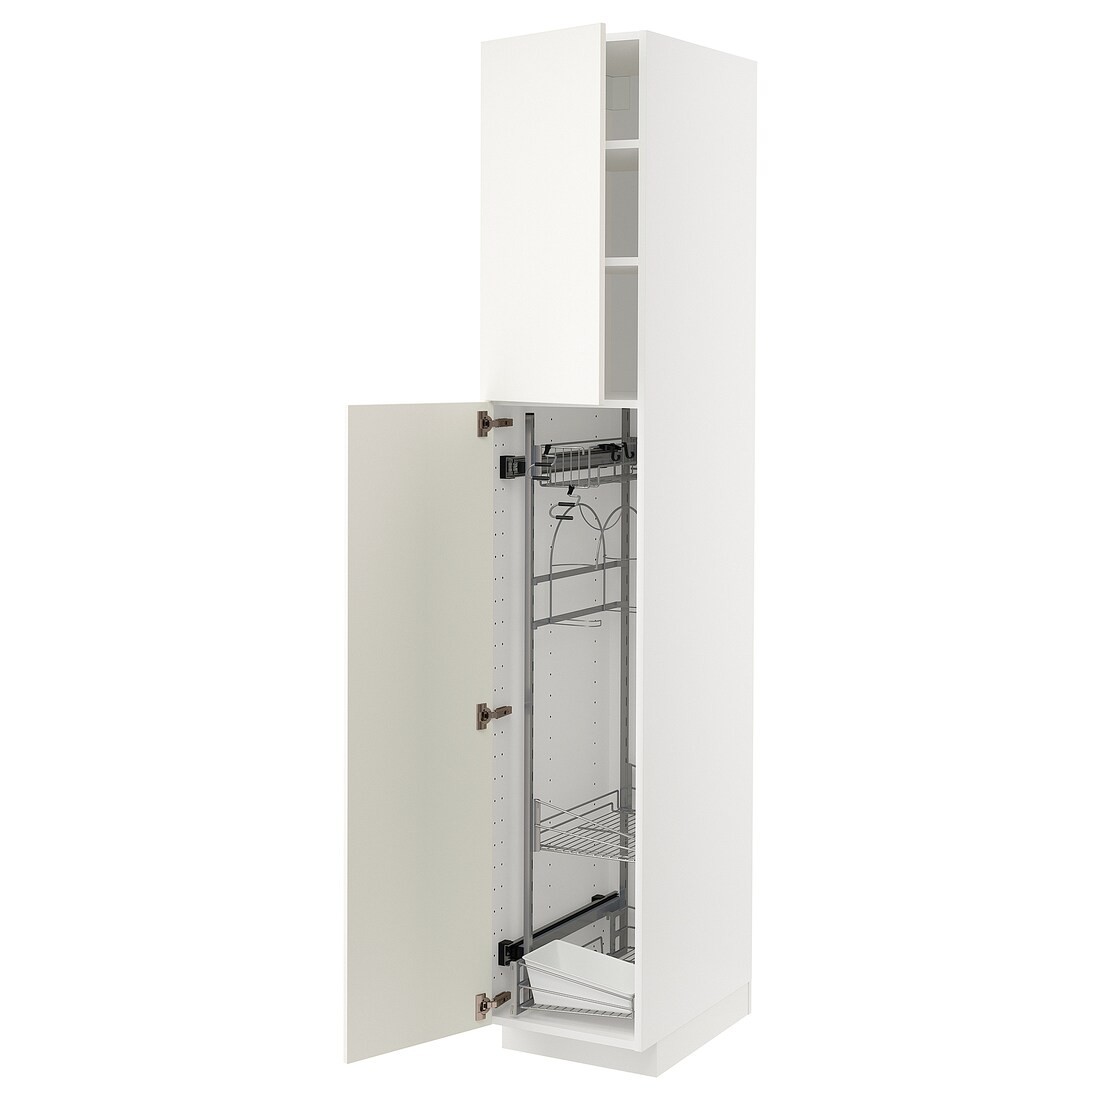 METOD МЕТОД Высокий шкаф с отделением для аксессуаров для уборки, белый / Veddinge белый, 40x60x220 см